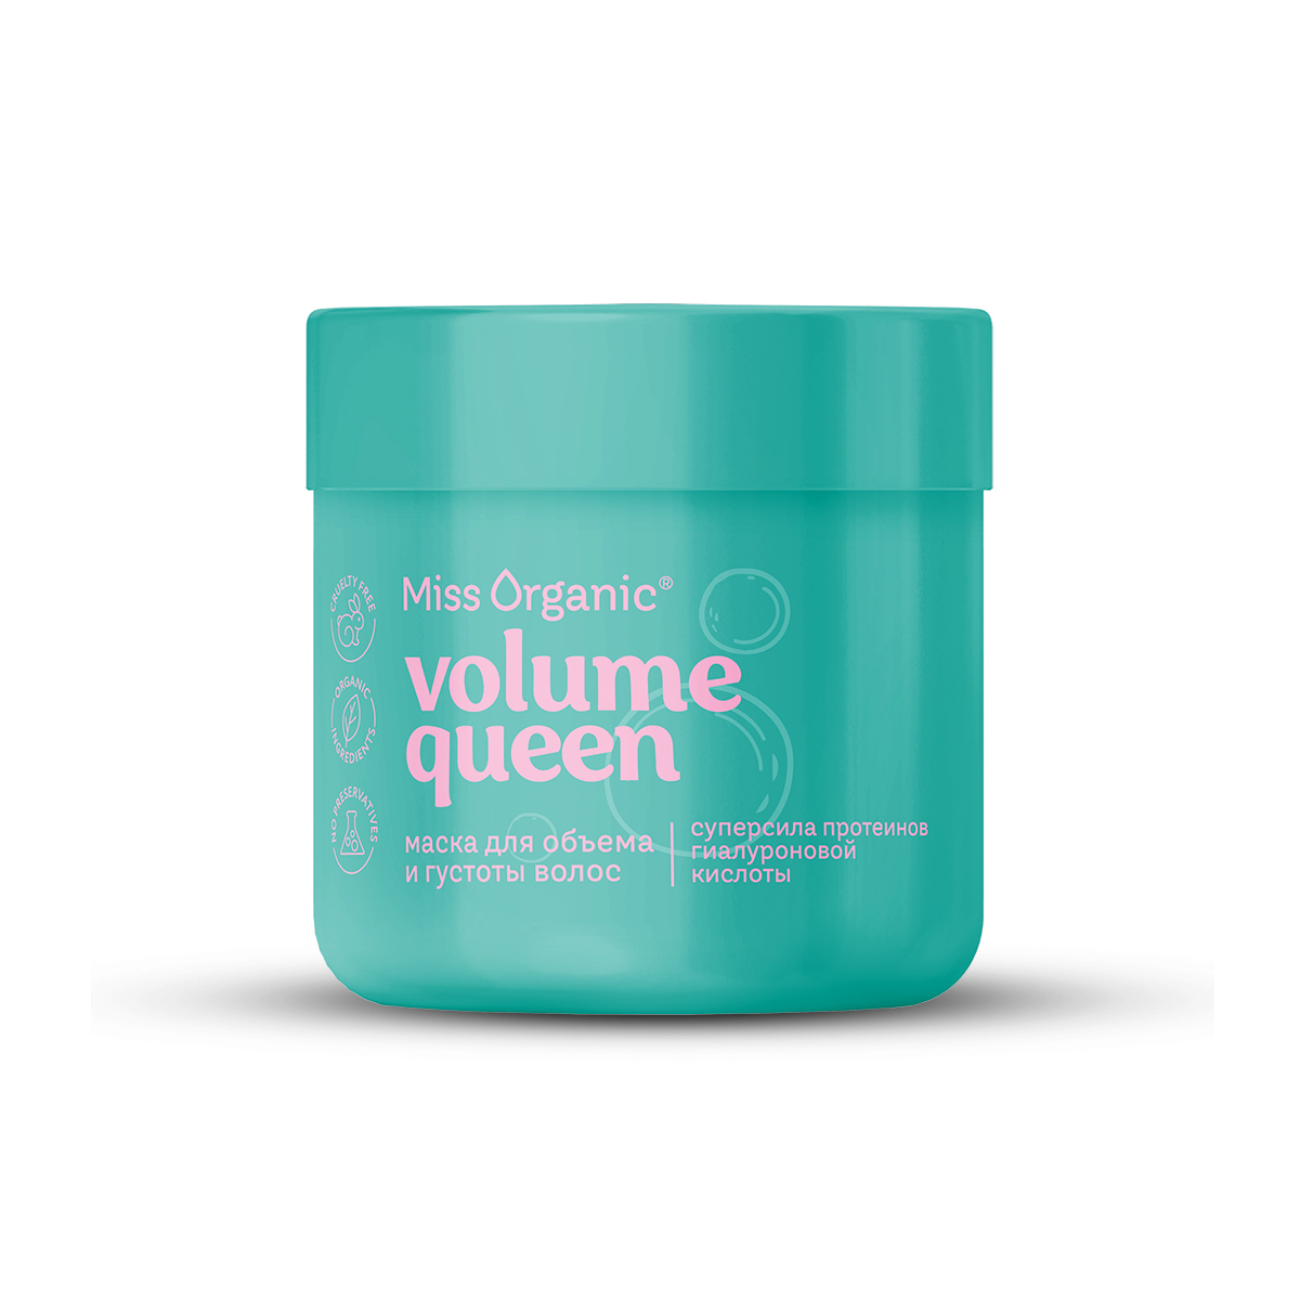 Маска для волос Miss Organic Volume Queen для объема и густоты волос, 140 мл маска masil для объема волос с пробиотиками probiotics perfect volume treatment 300 мл